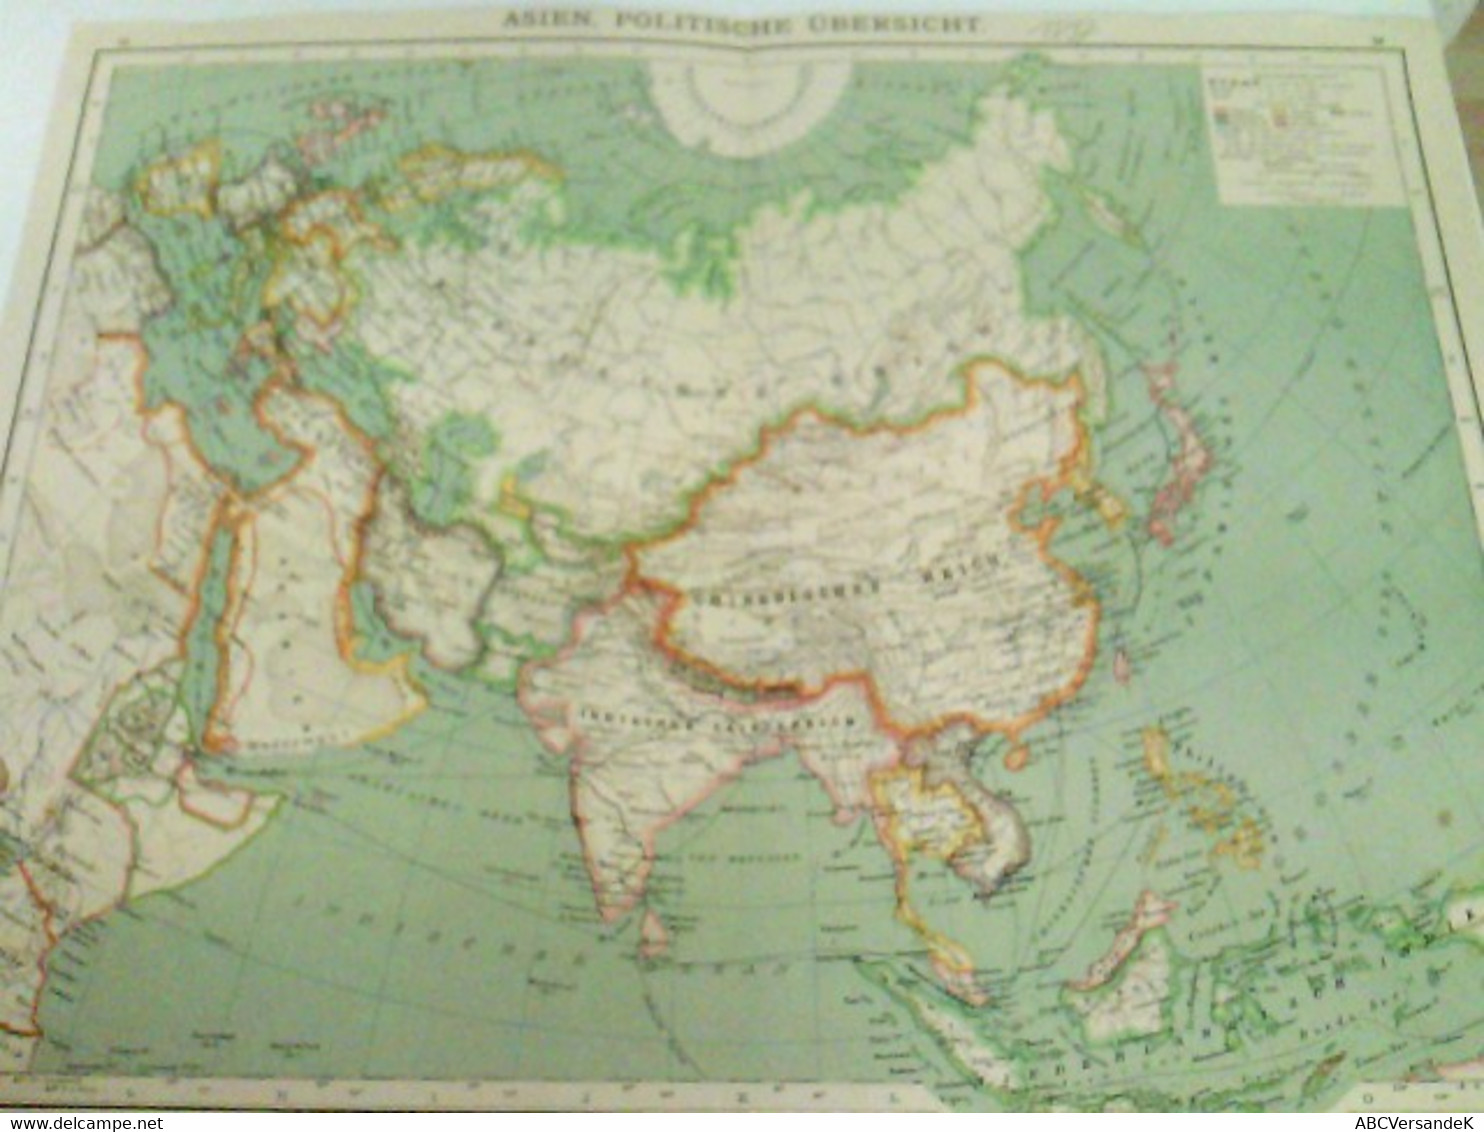 Farblithografie Asien, Politische Übersicht, Maßstab 1 : 35.000.000 - Asia & Near-East